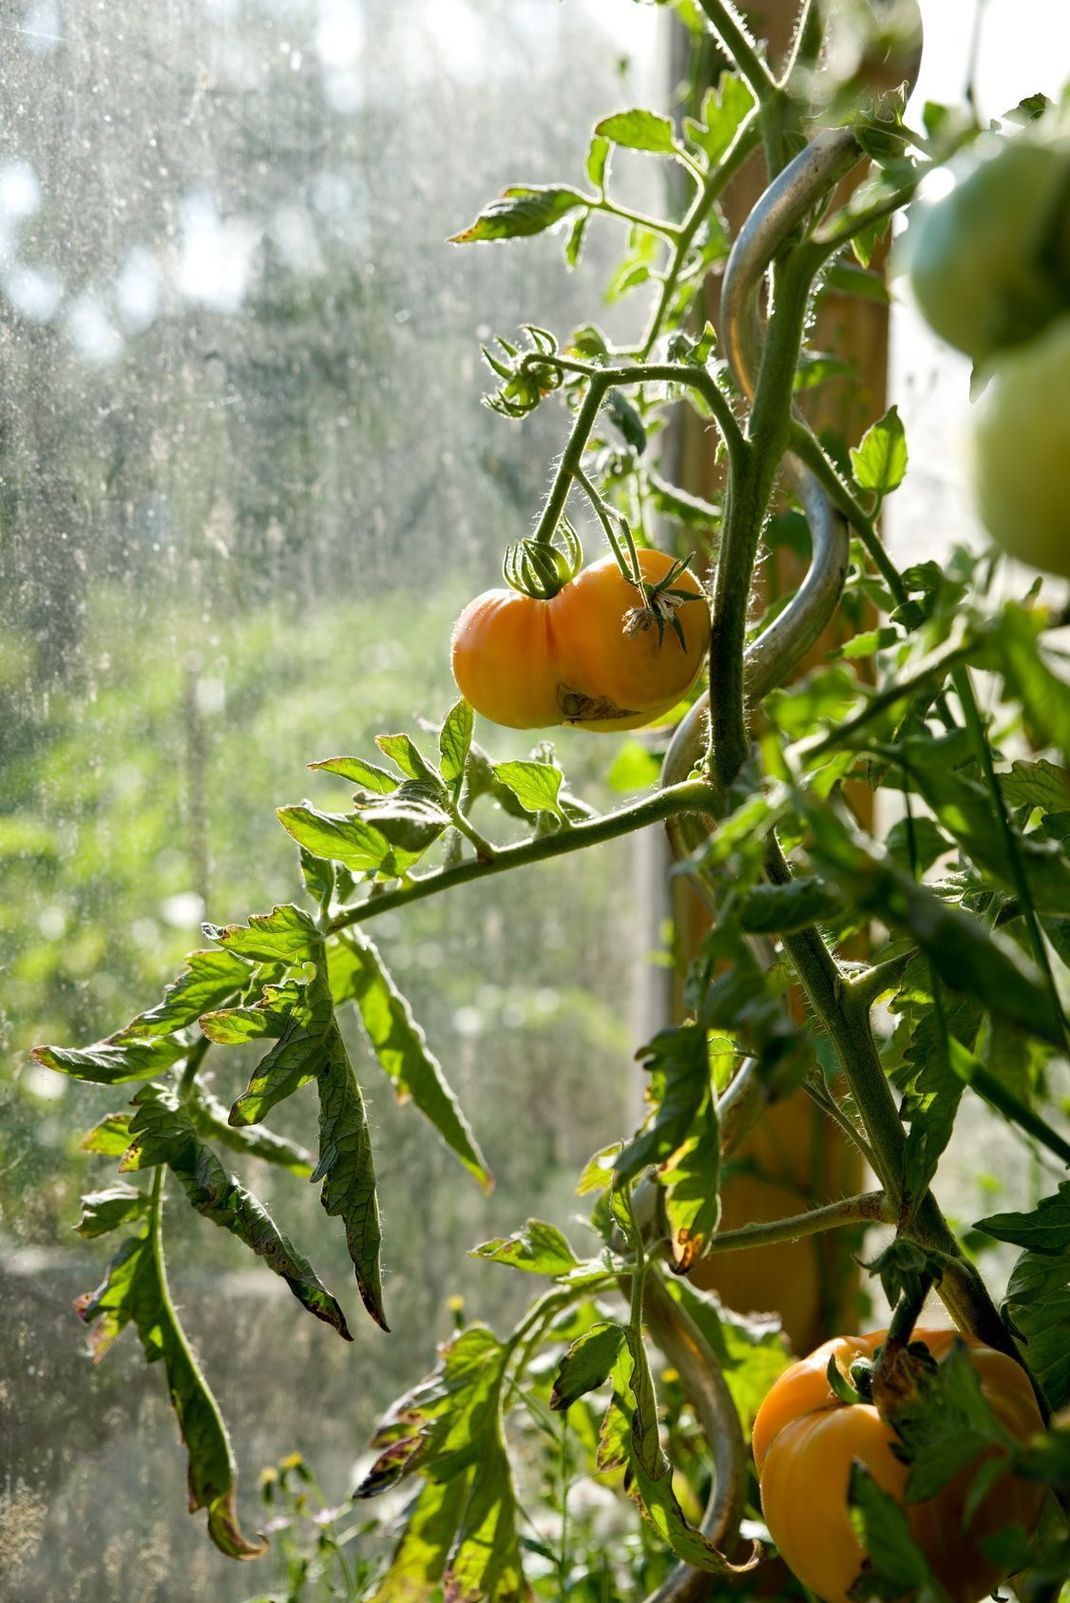 Haben die Tomaten ein Dach über dem Kopf, können Sie Ihnen beim Rotwerden praktisch zusehen.